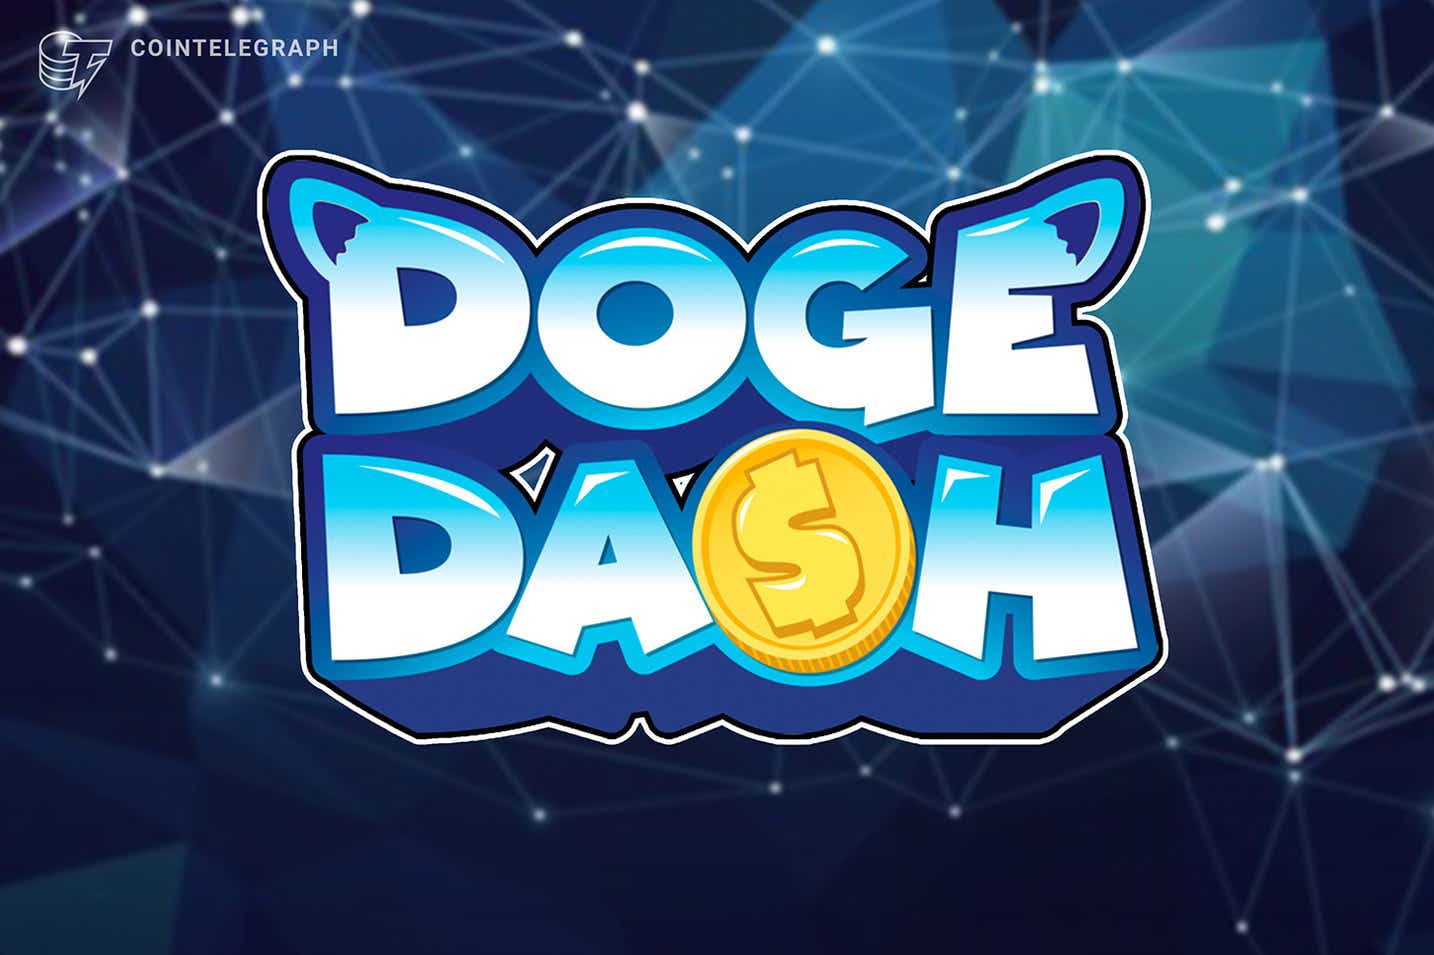 Doge Dash NFT giảm vào ngày 4 tháng 12, trò chơi tiếp theo